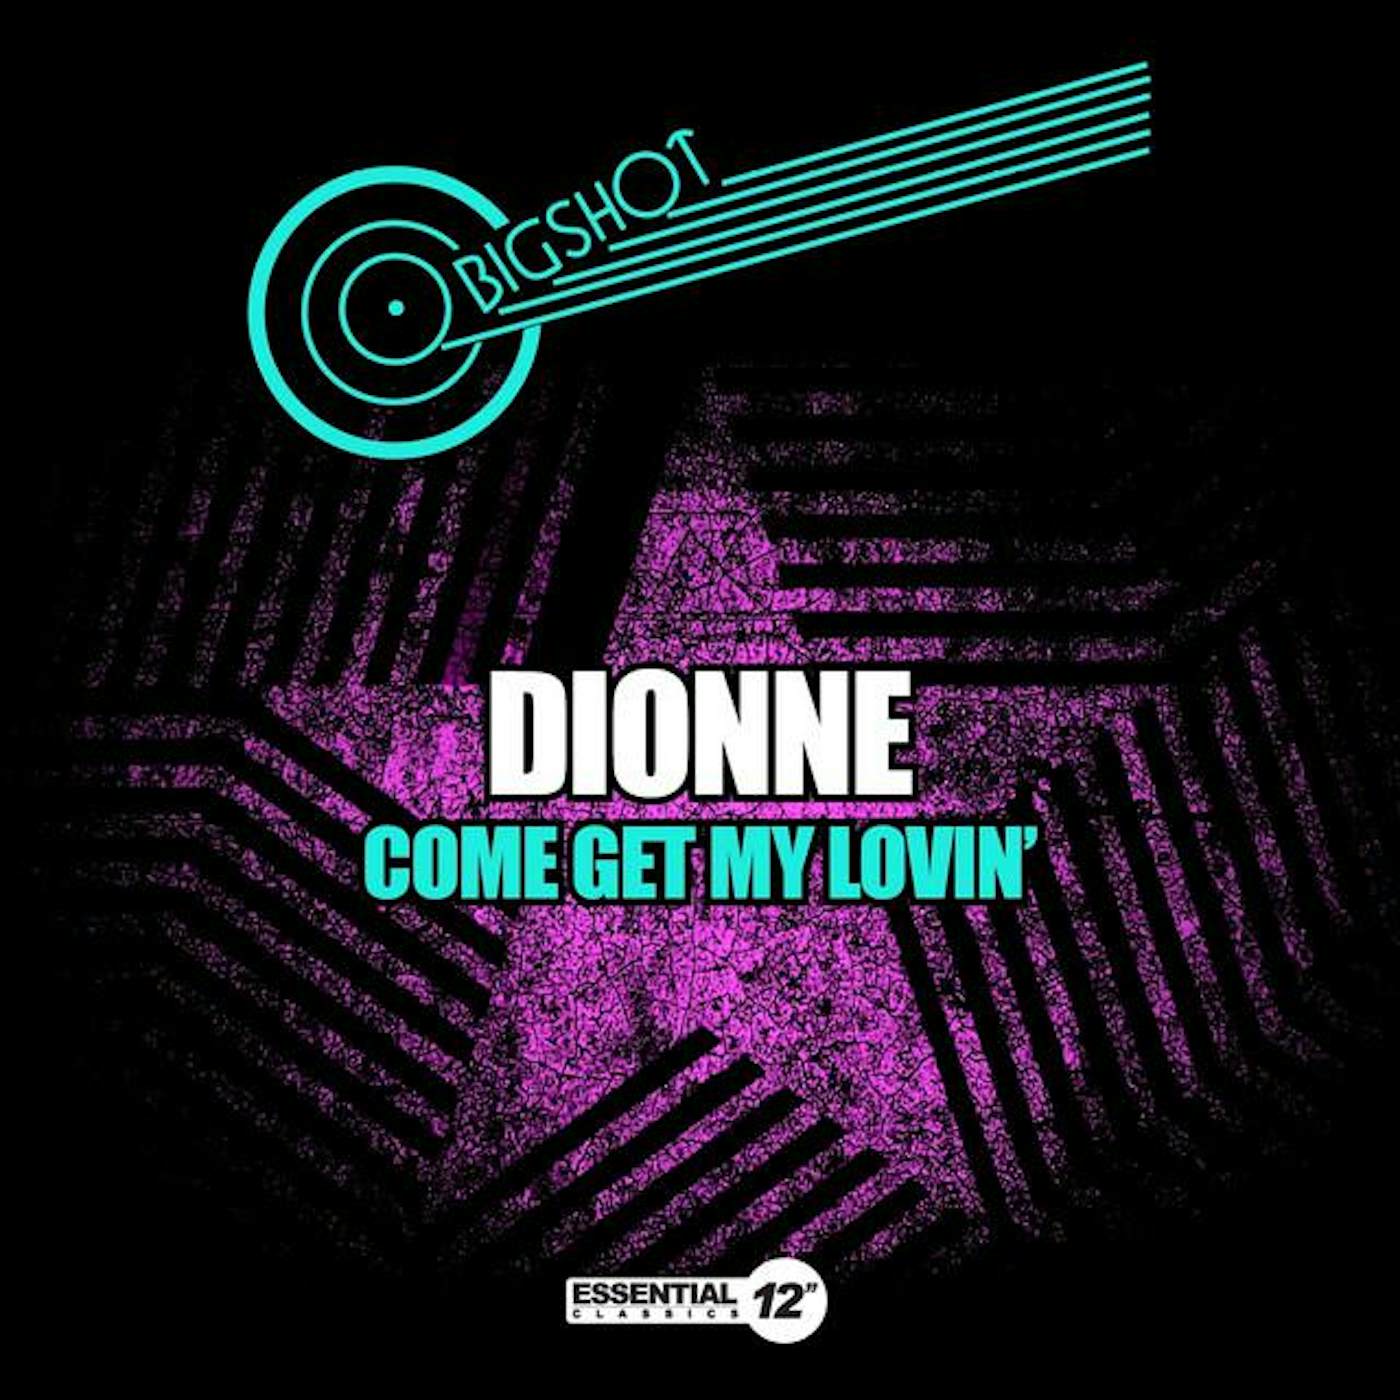 Dionne